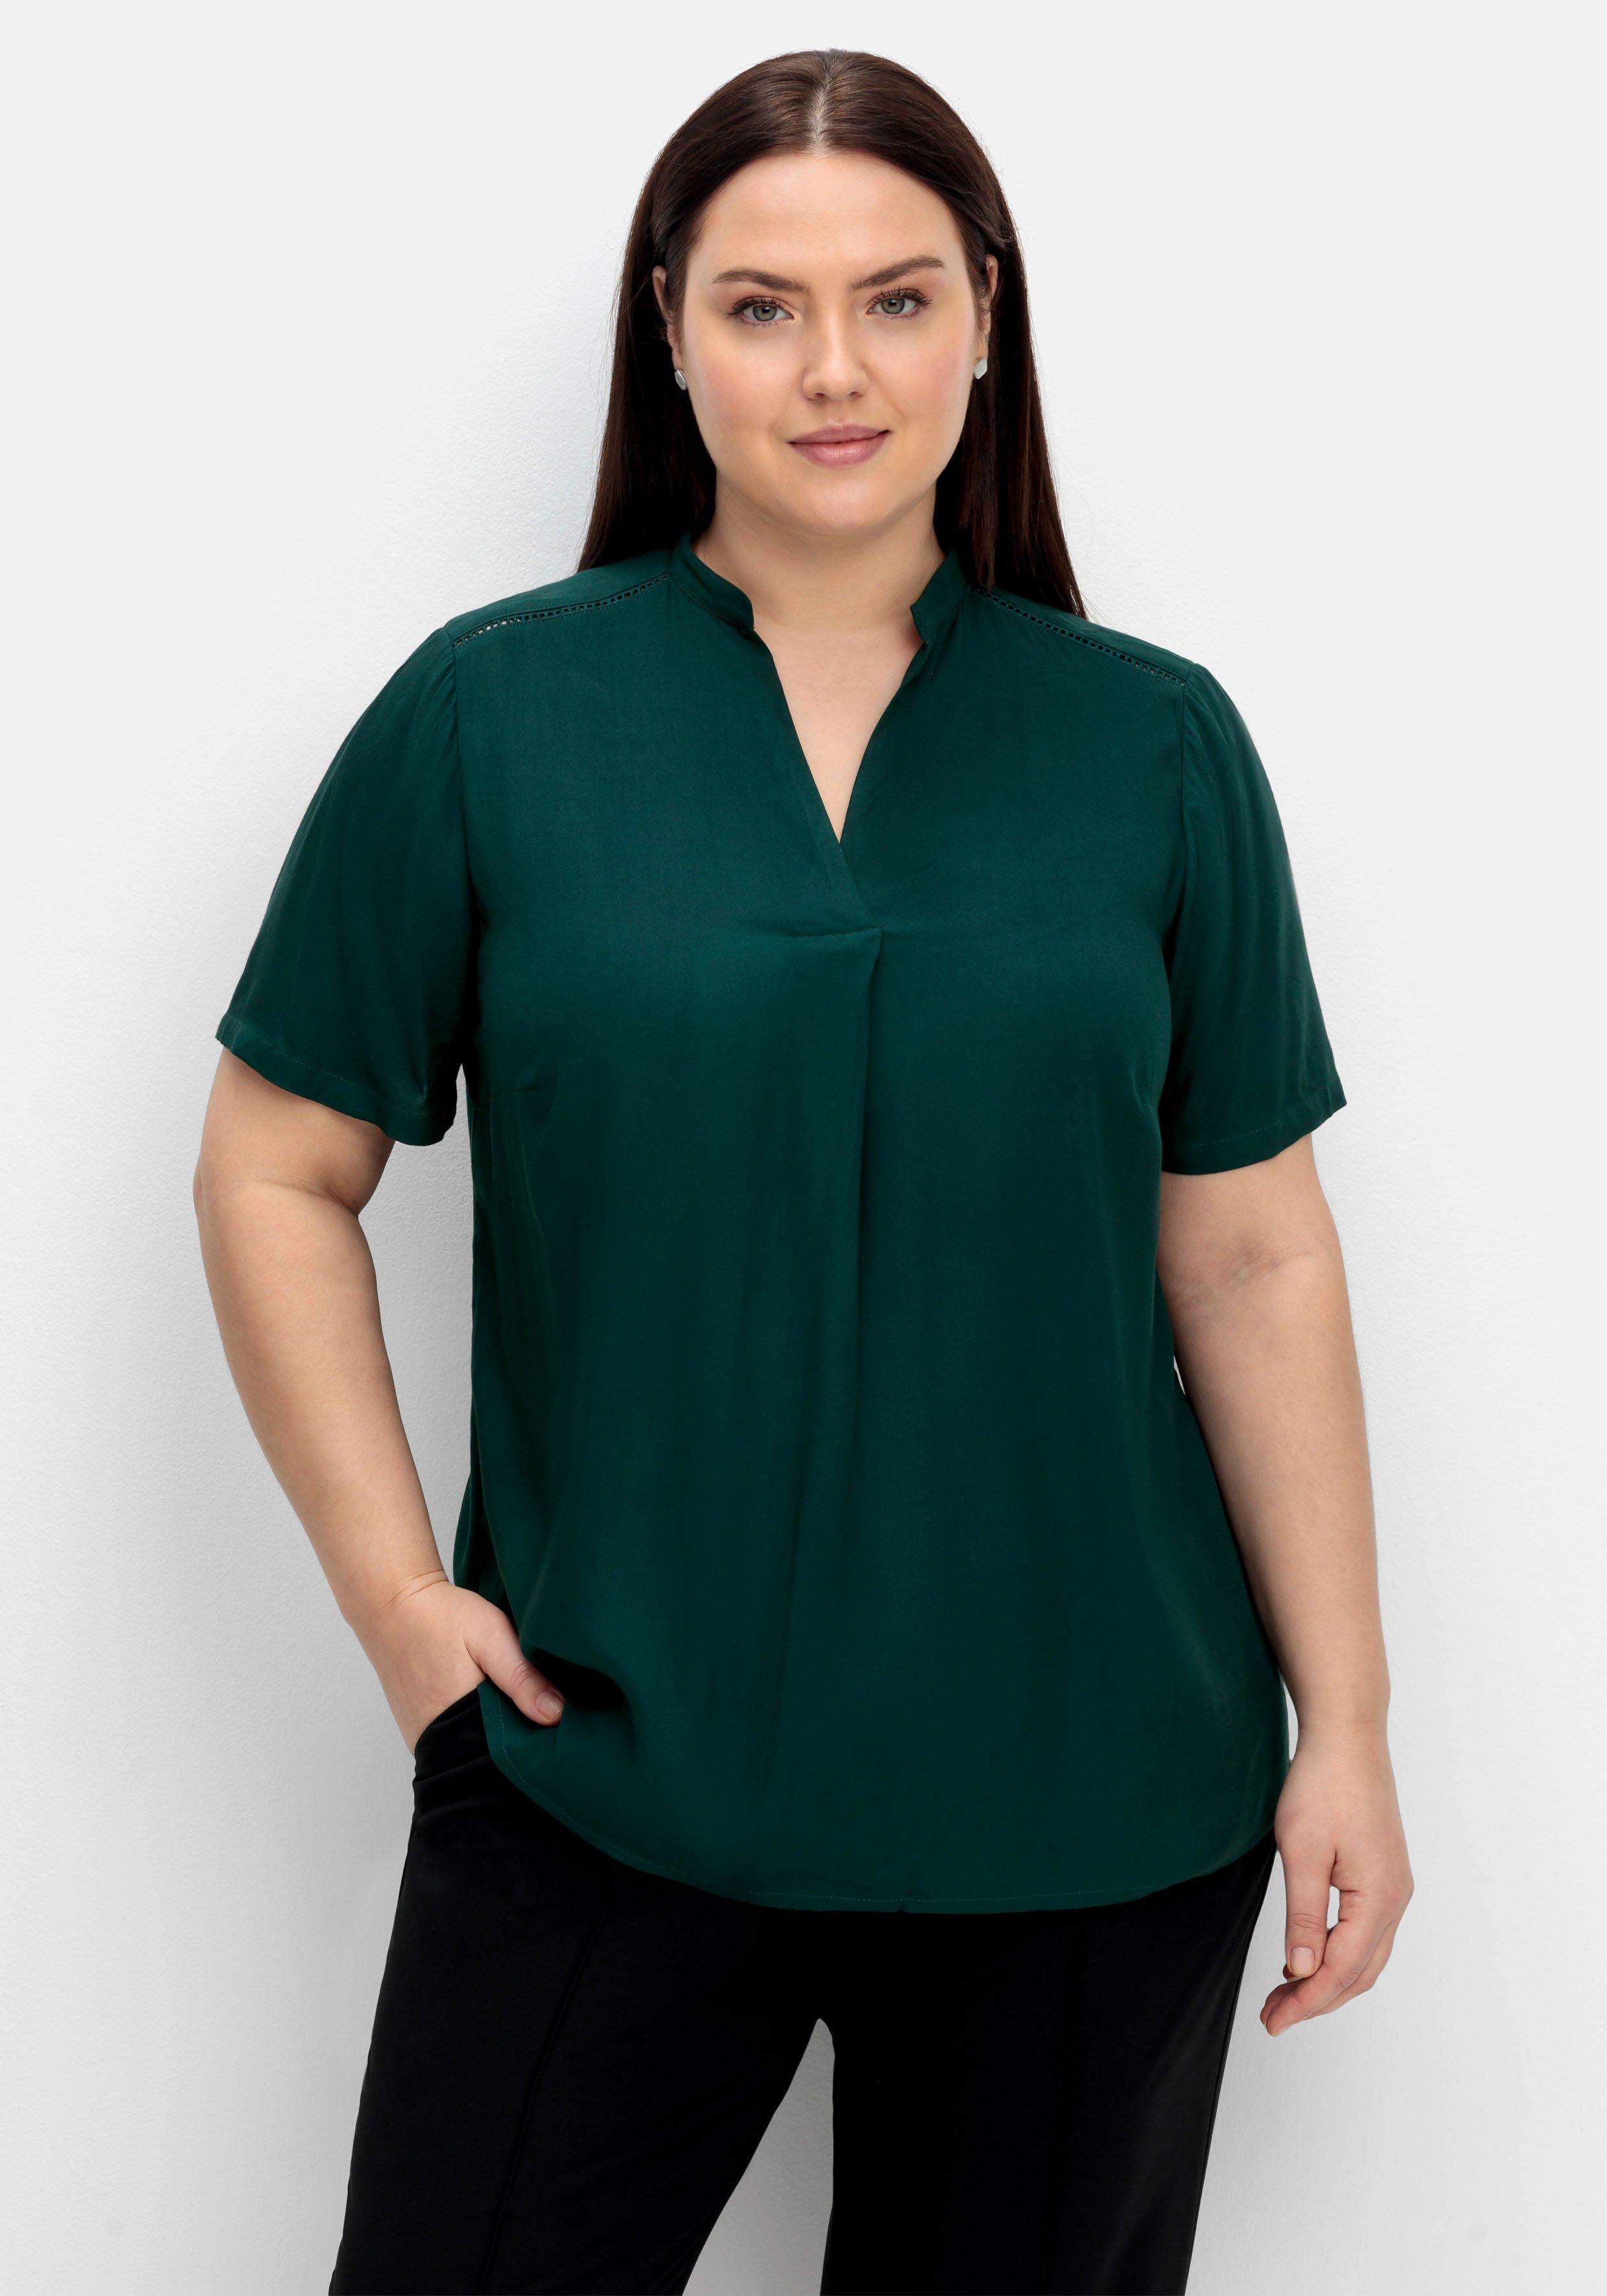 Blusen Größen | Size Tuniken 50 Größe & Mode sheego grün › ♥ Plus große